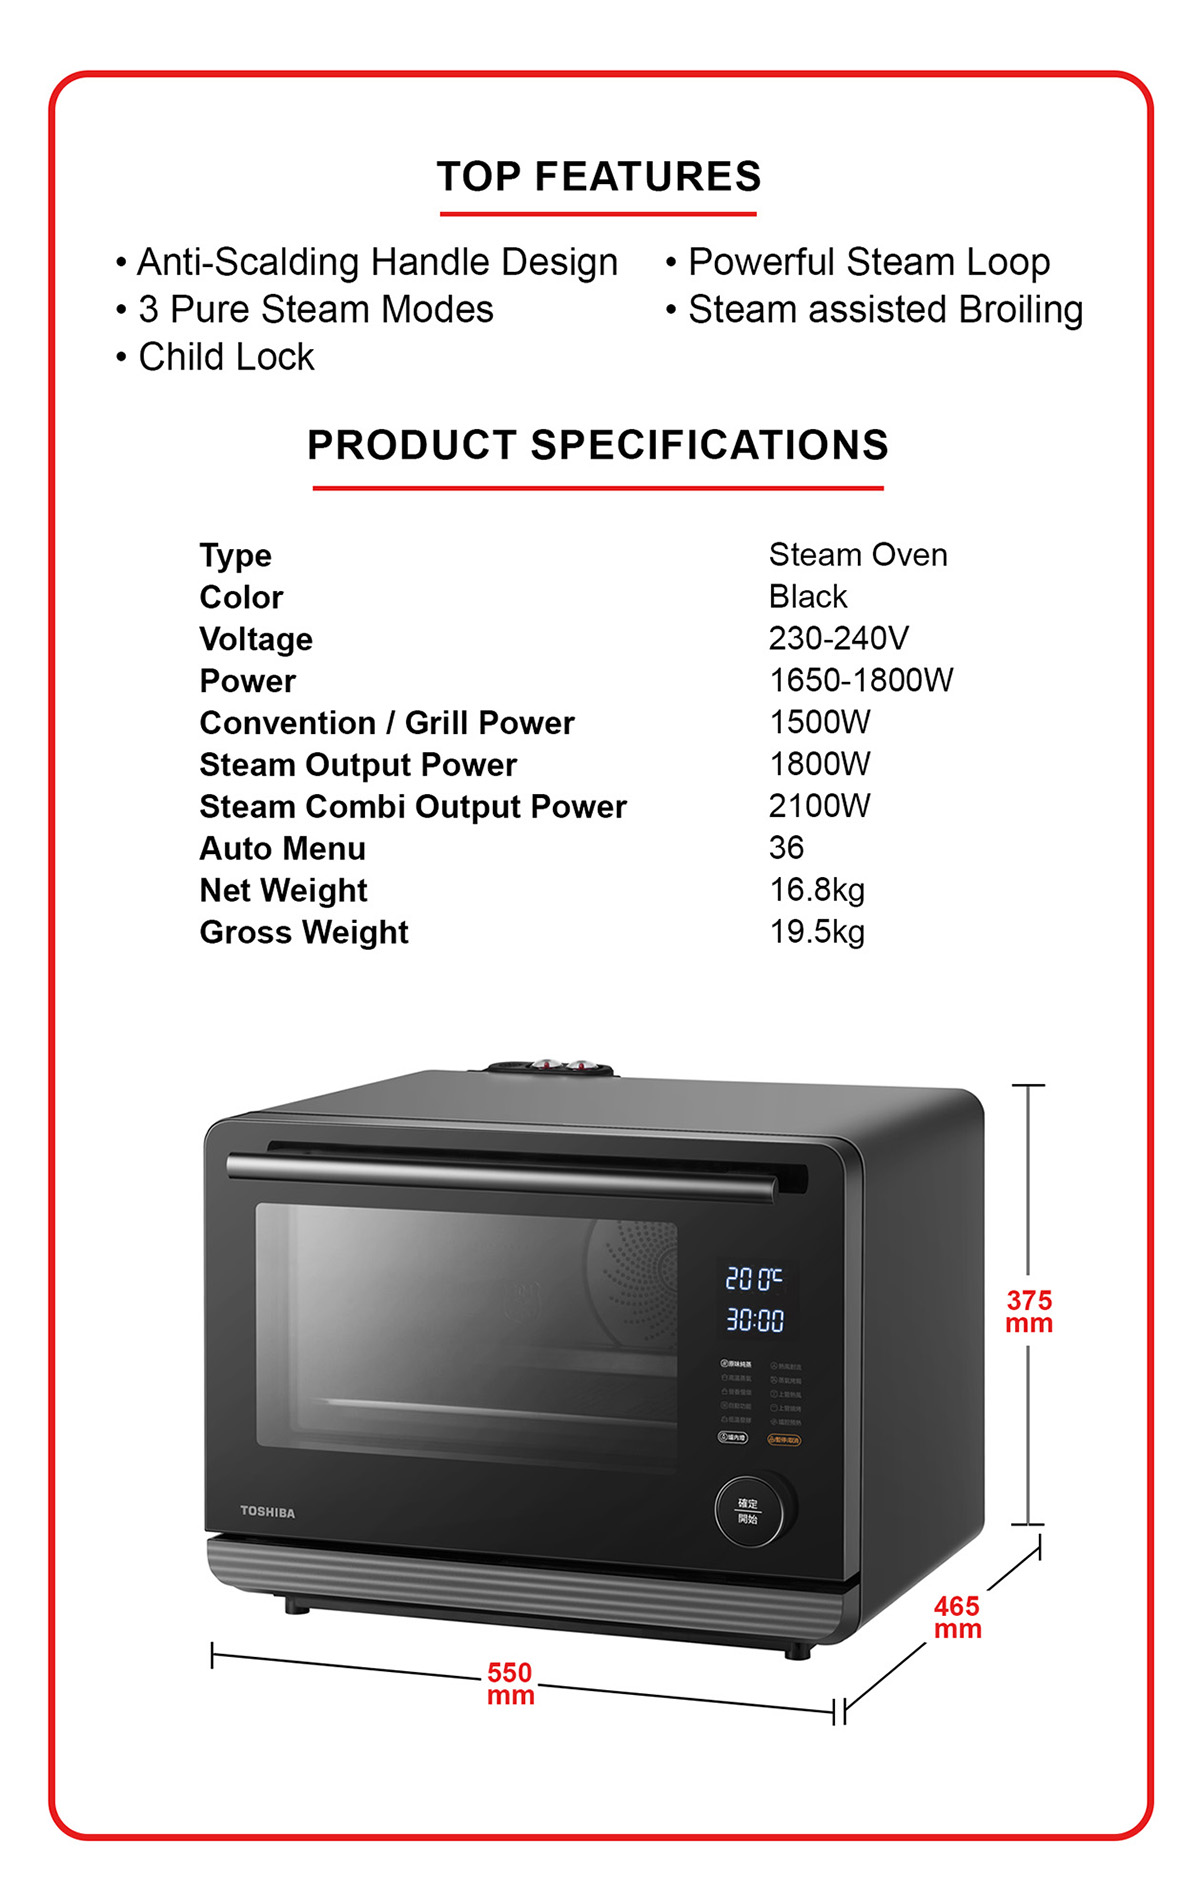 Qoo10 - TOSHIBA MS5-TR30SC 30L BLACK STEAM OVEN : Small Appliances